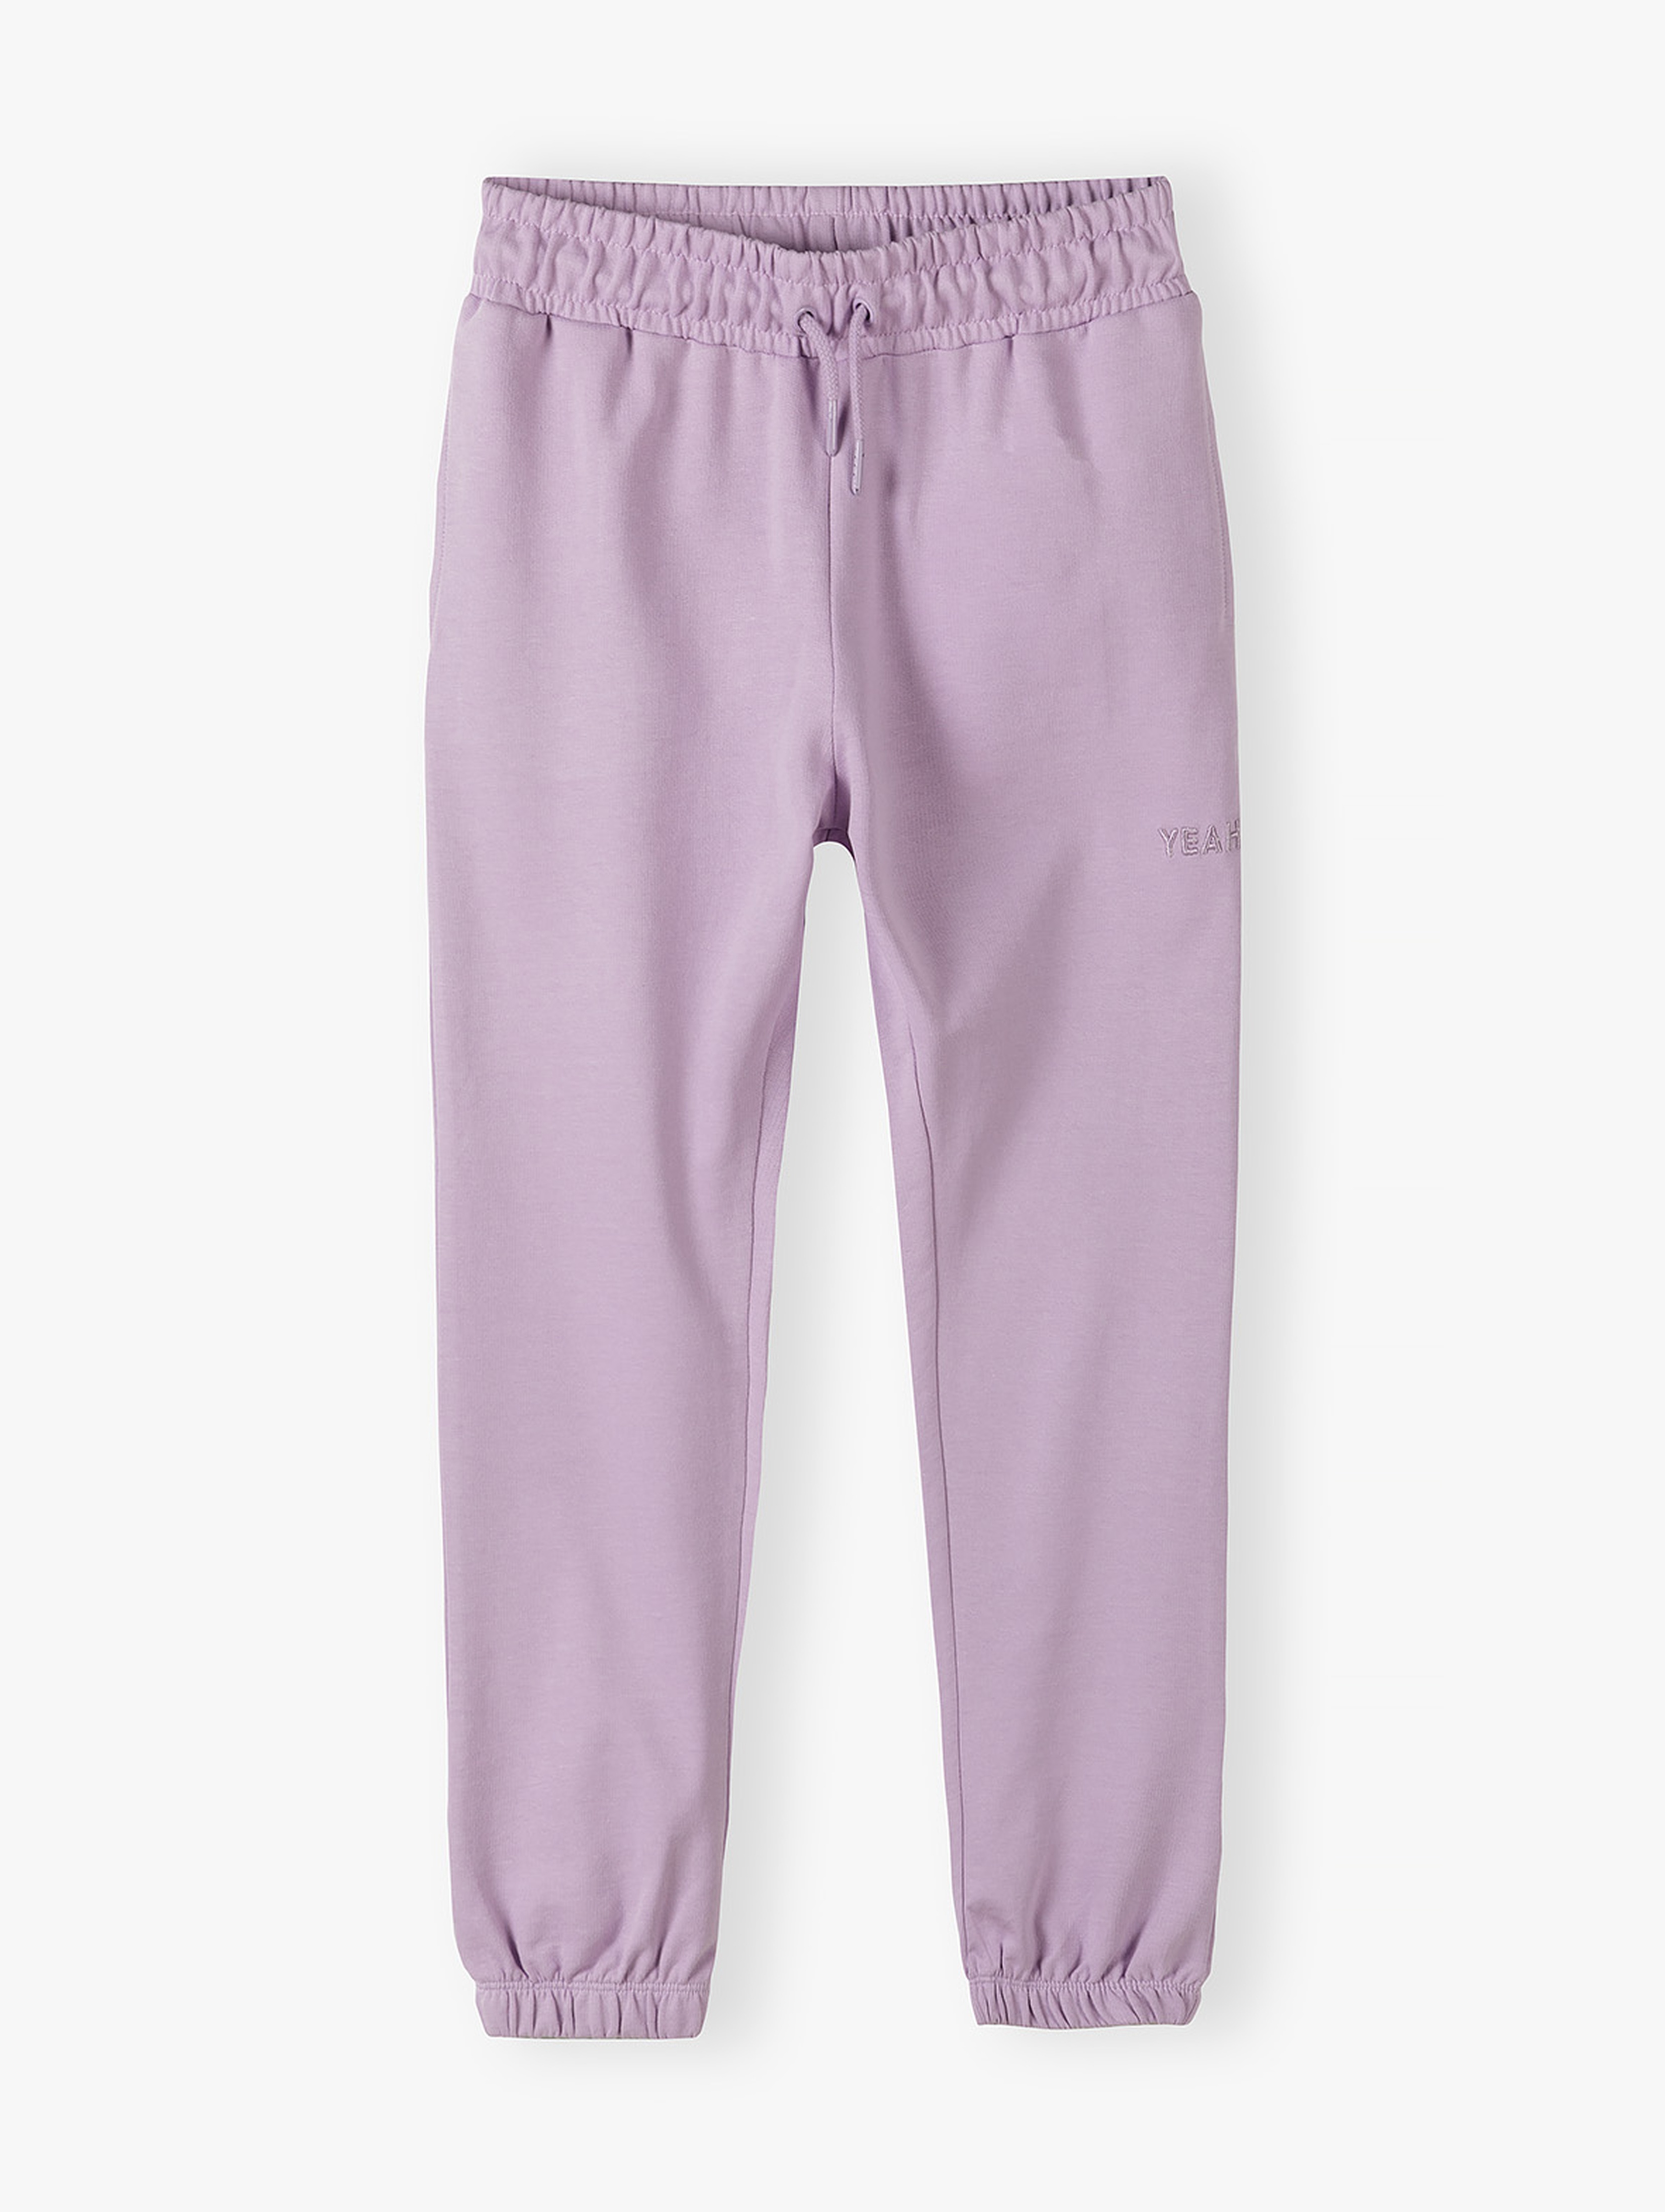 Fioletowe spodnie dresowe dla dziewczynki